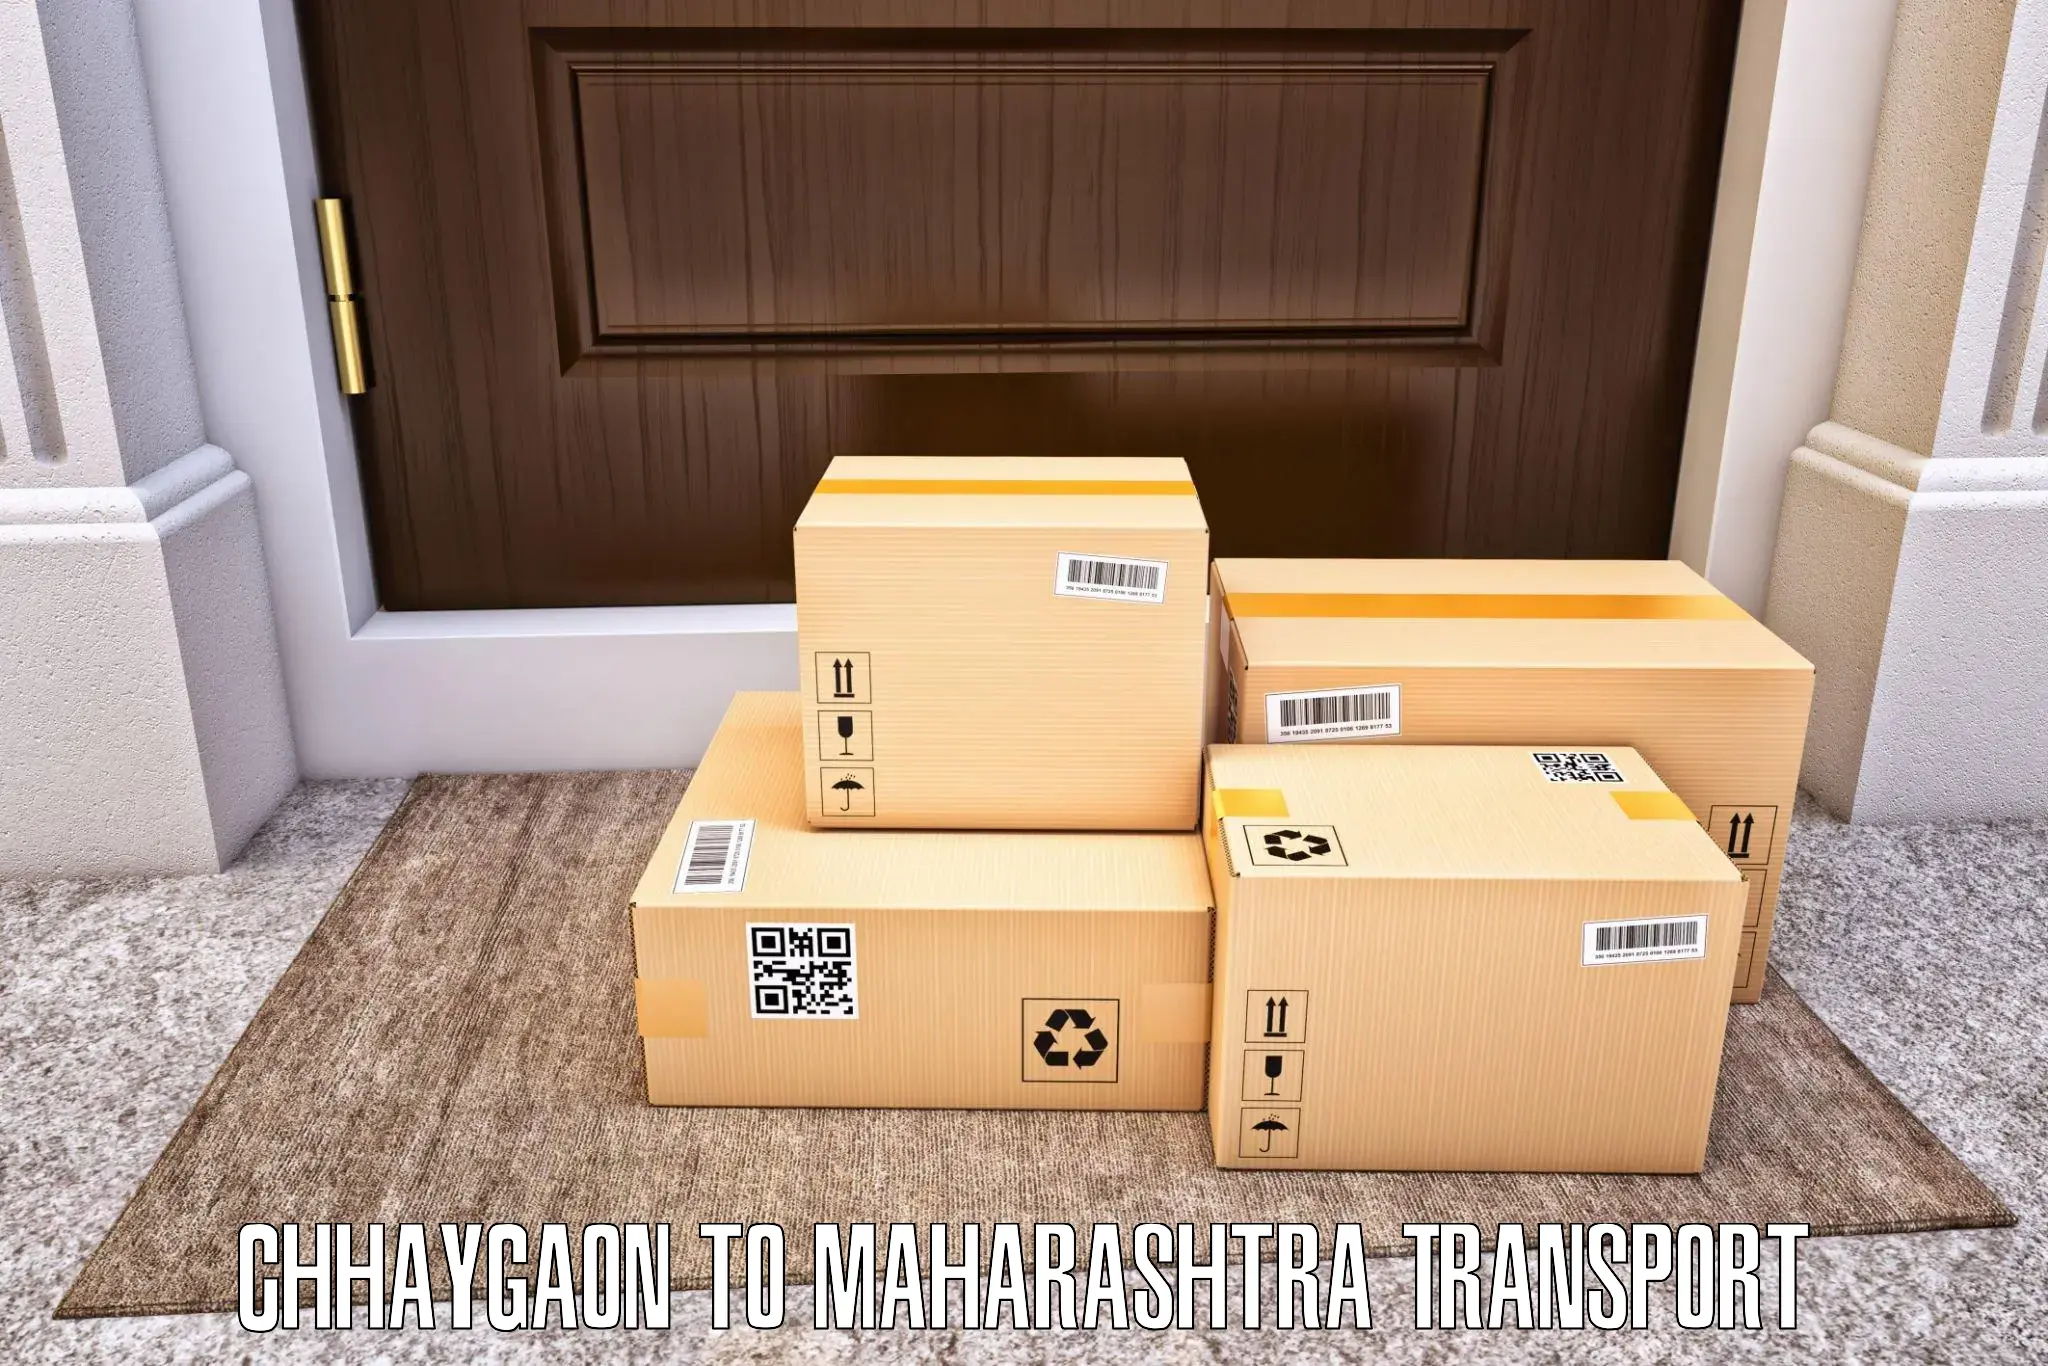 Shipping partner Chhaygaon to Satana